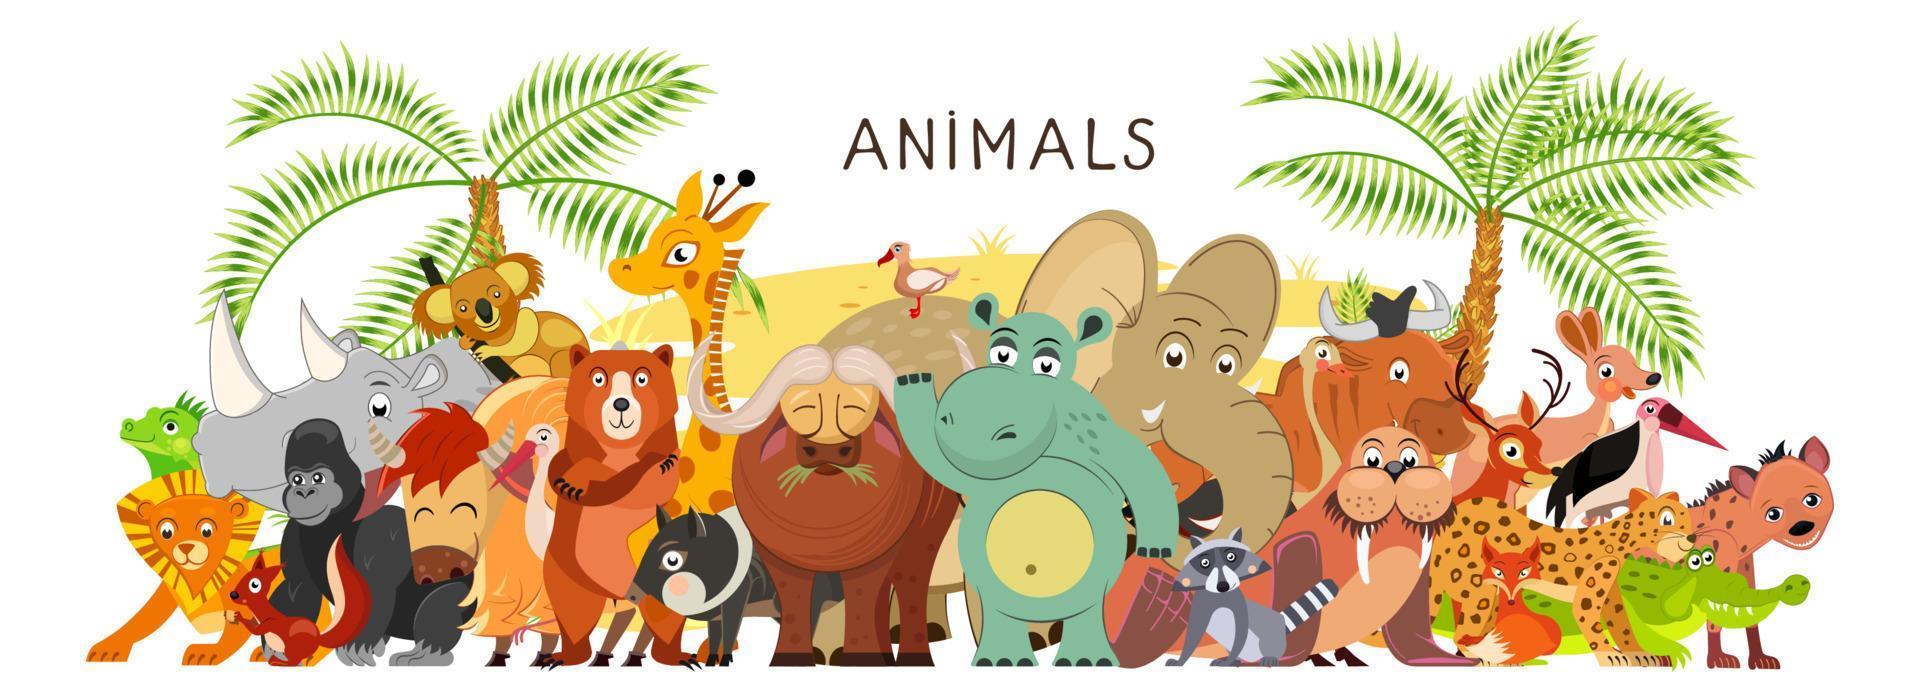 groot groep van dieren in tekenfilm vlak stijl staan samen. wereld fauna. vector illustratie